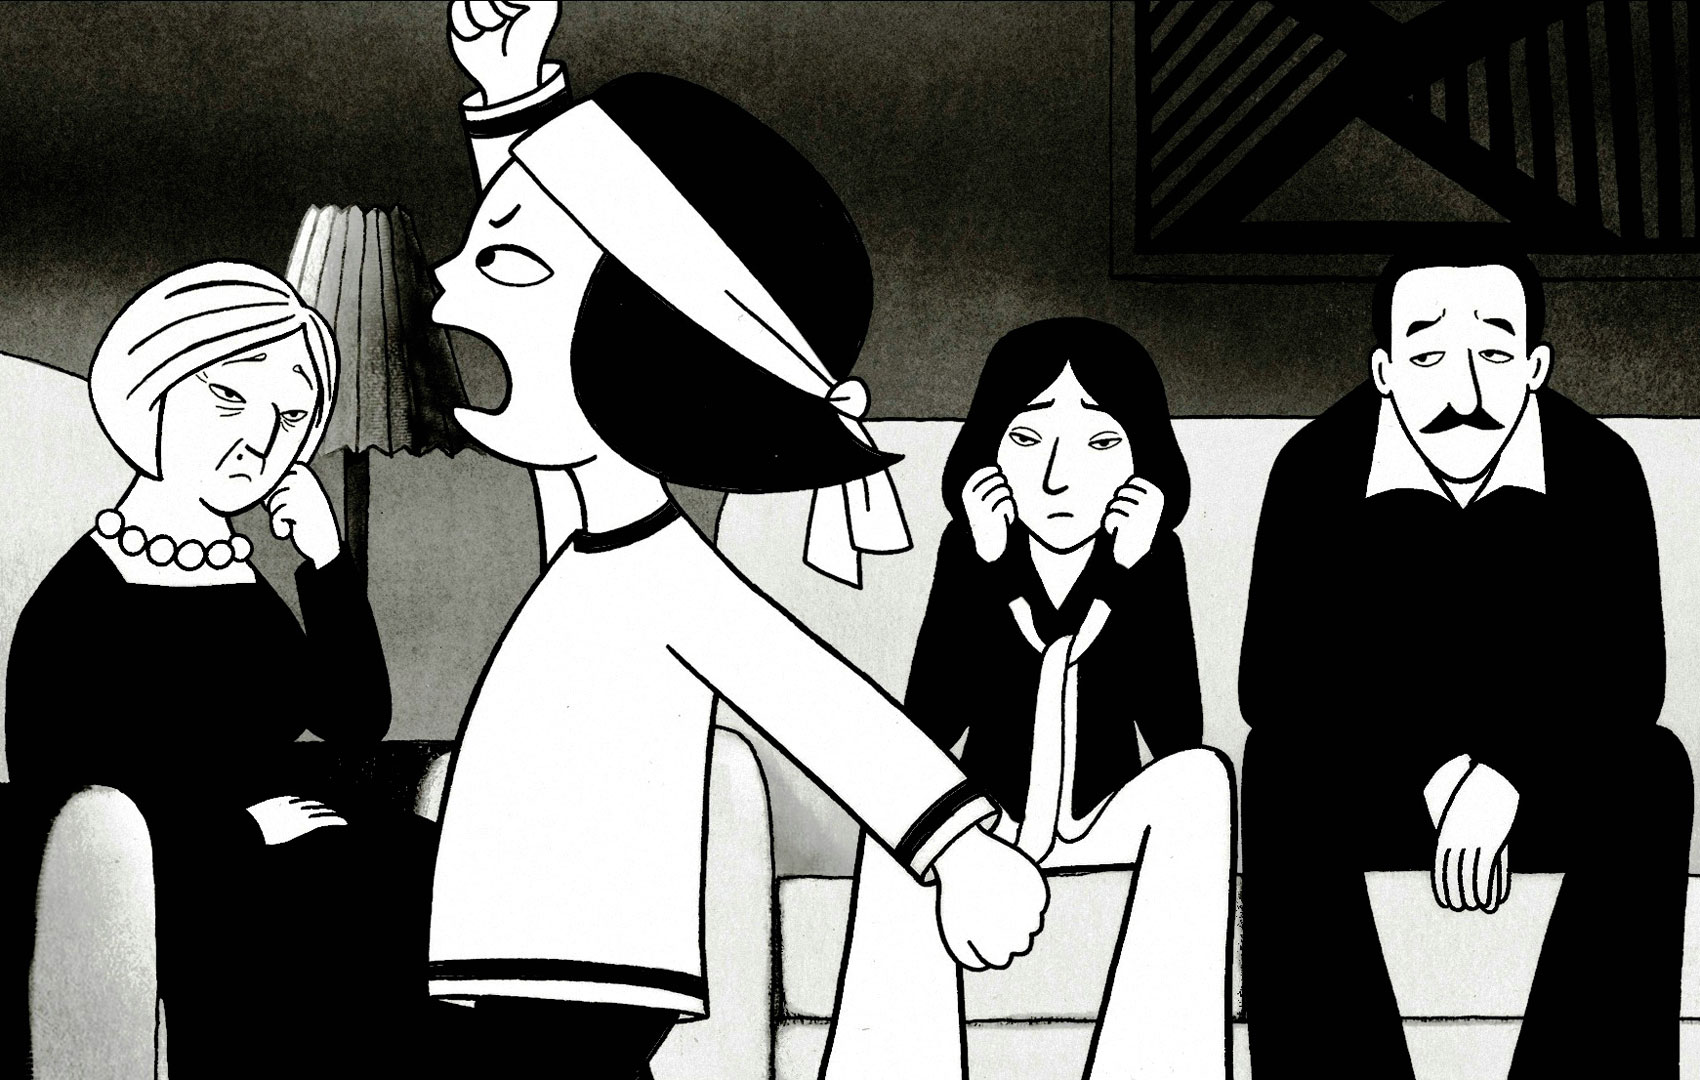 Schwarz-weiße Zeichentrickanimation: Ein kleines Mädchen läuft in kämpferischer Pose vor seiner Familie auf und ab.